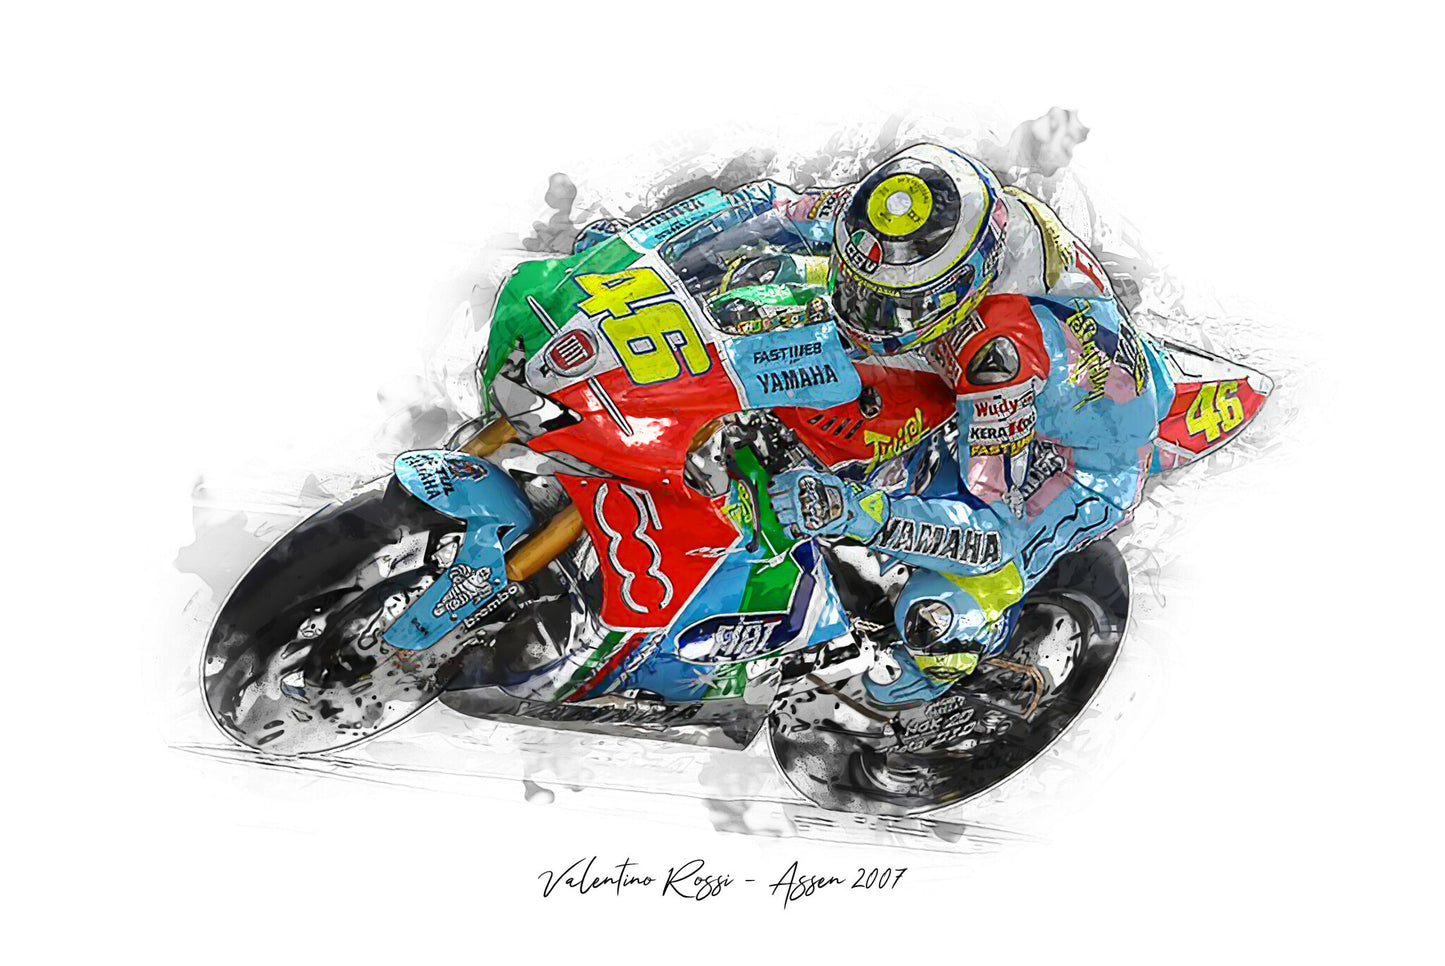 Valentino Rossi - Assen 2007 - Kunstdruck gerahmt - 40 x 30  cm